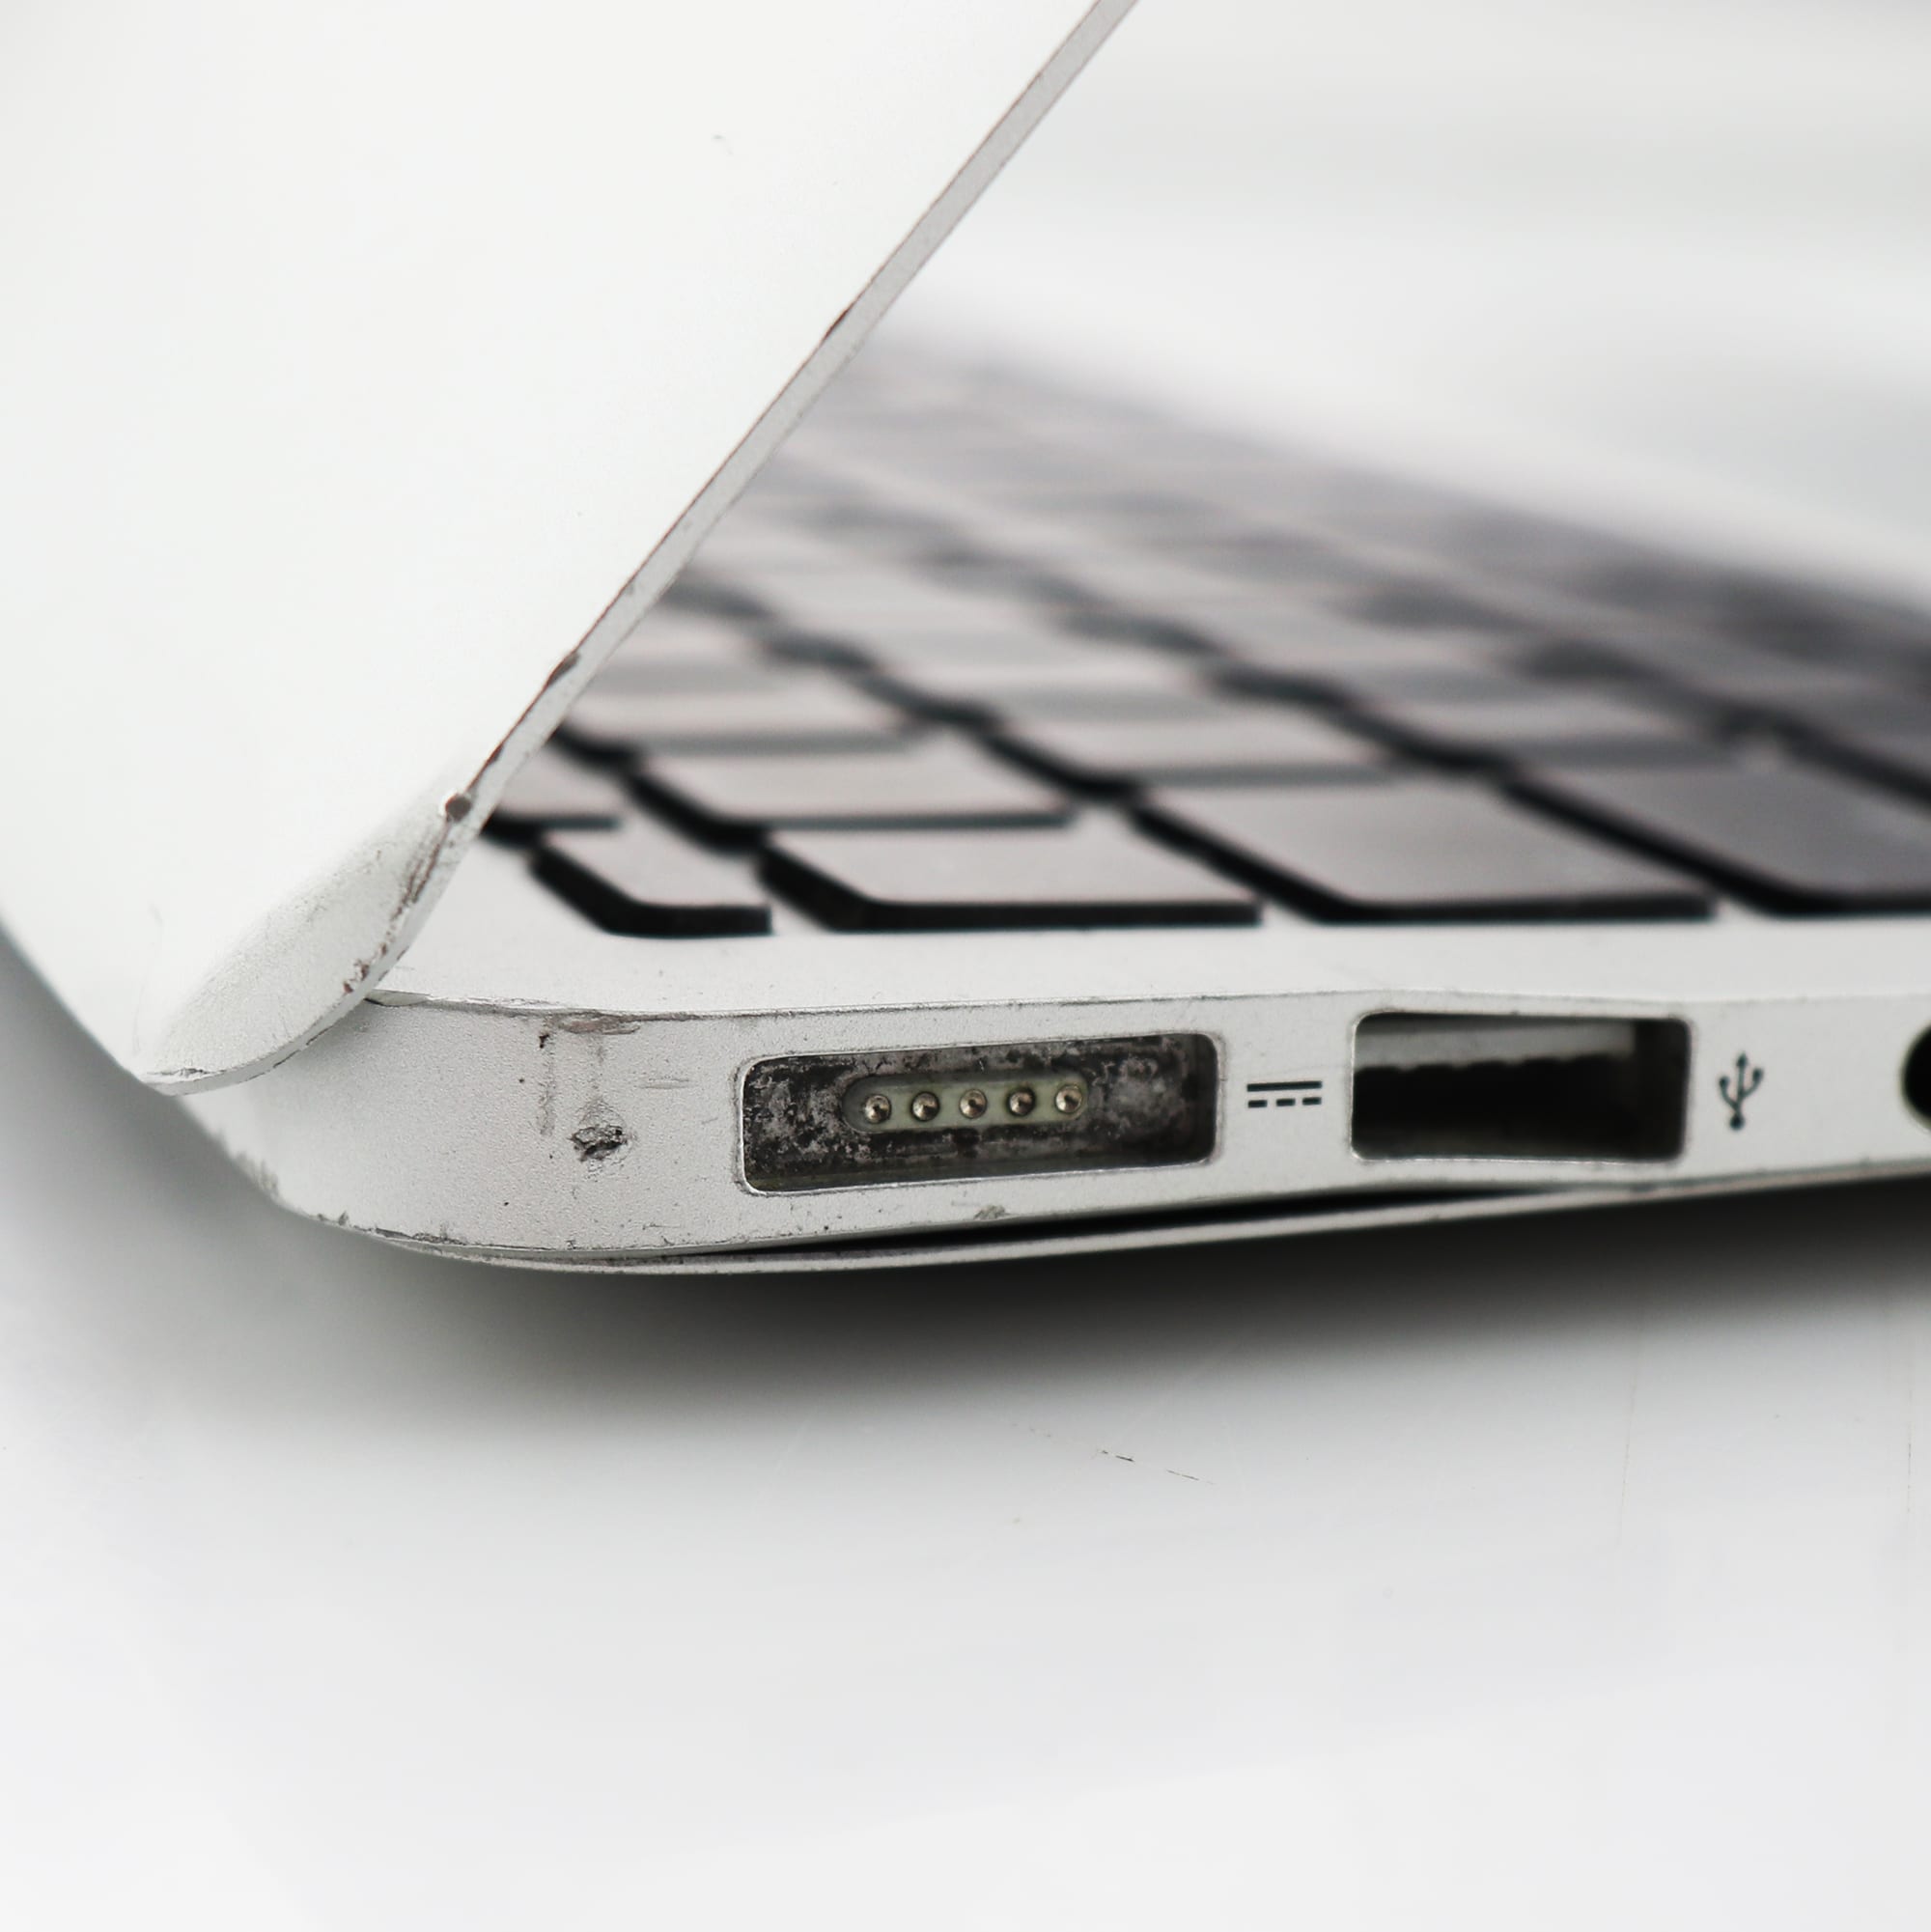 macbook 11 inch 2015 speecs